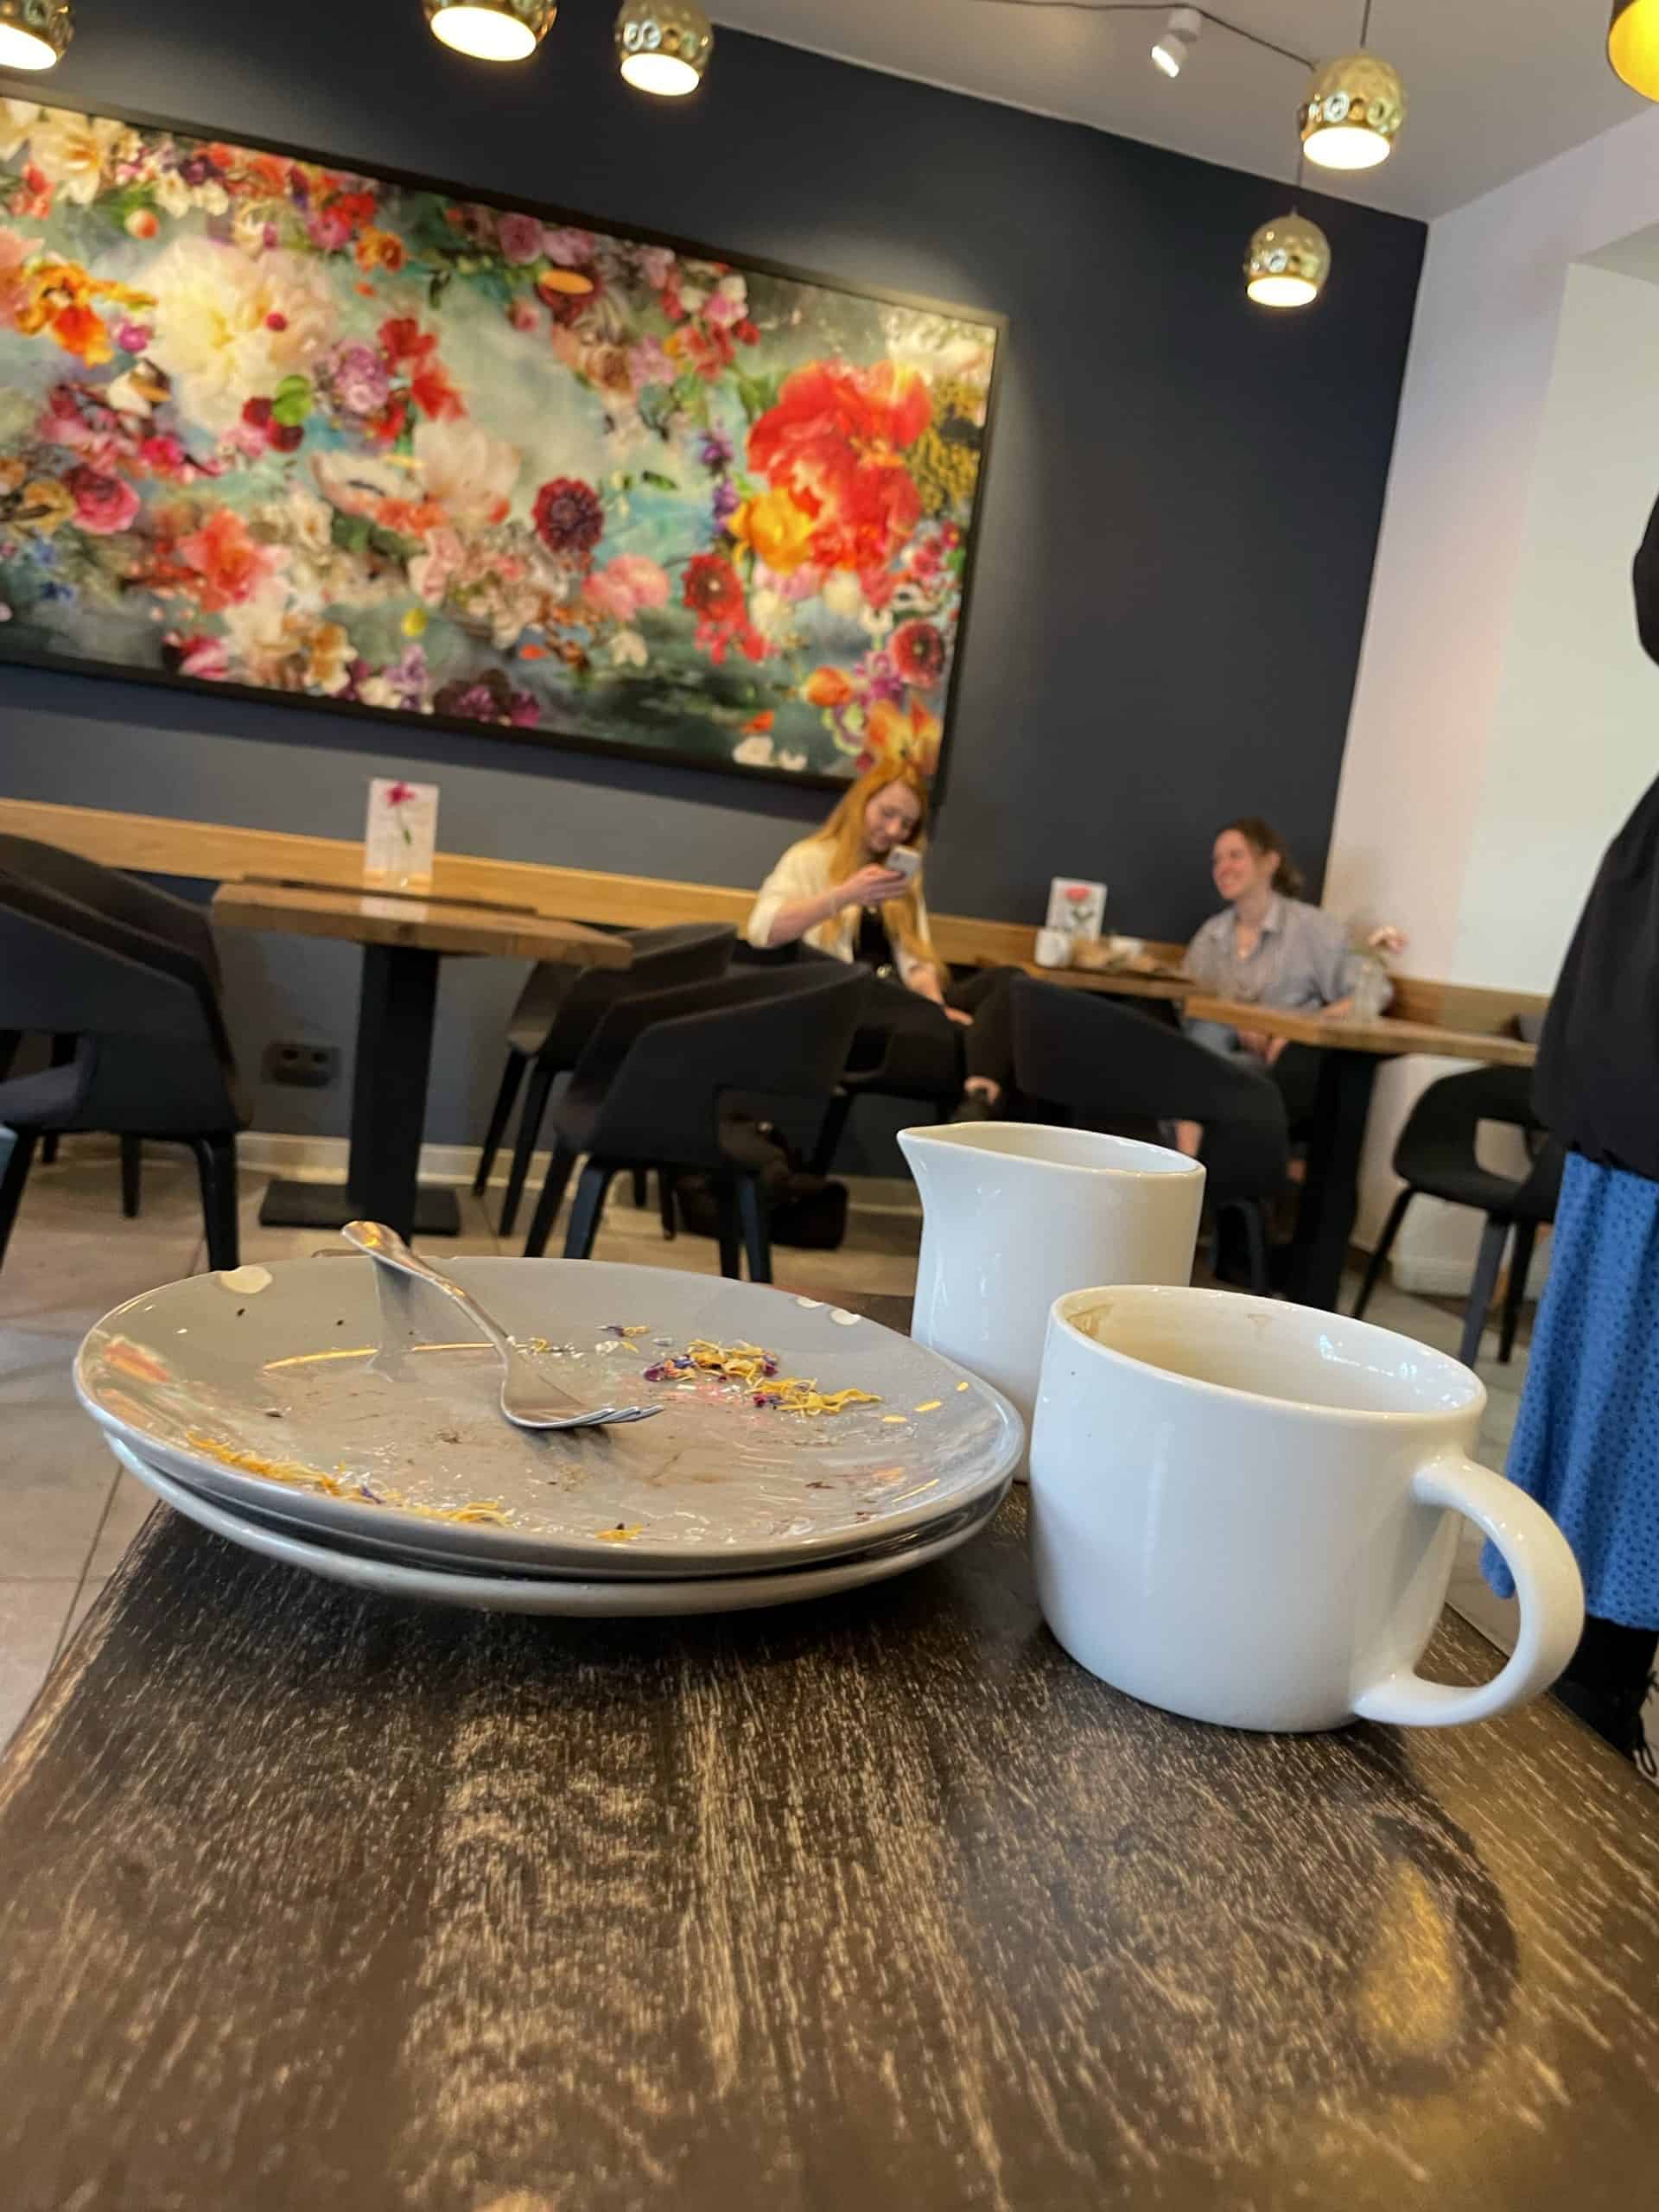 Cafe Rosenberg: leere Kuchenteller und Tassen